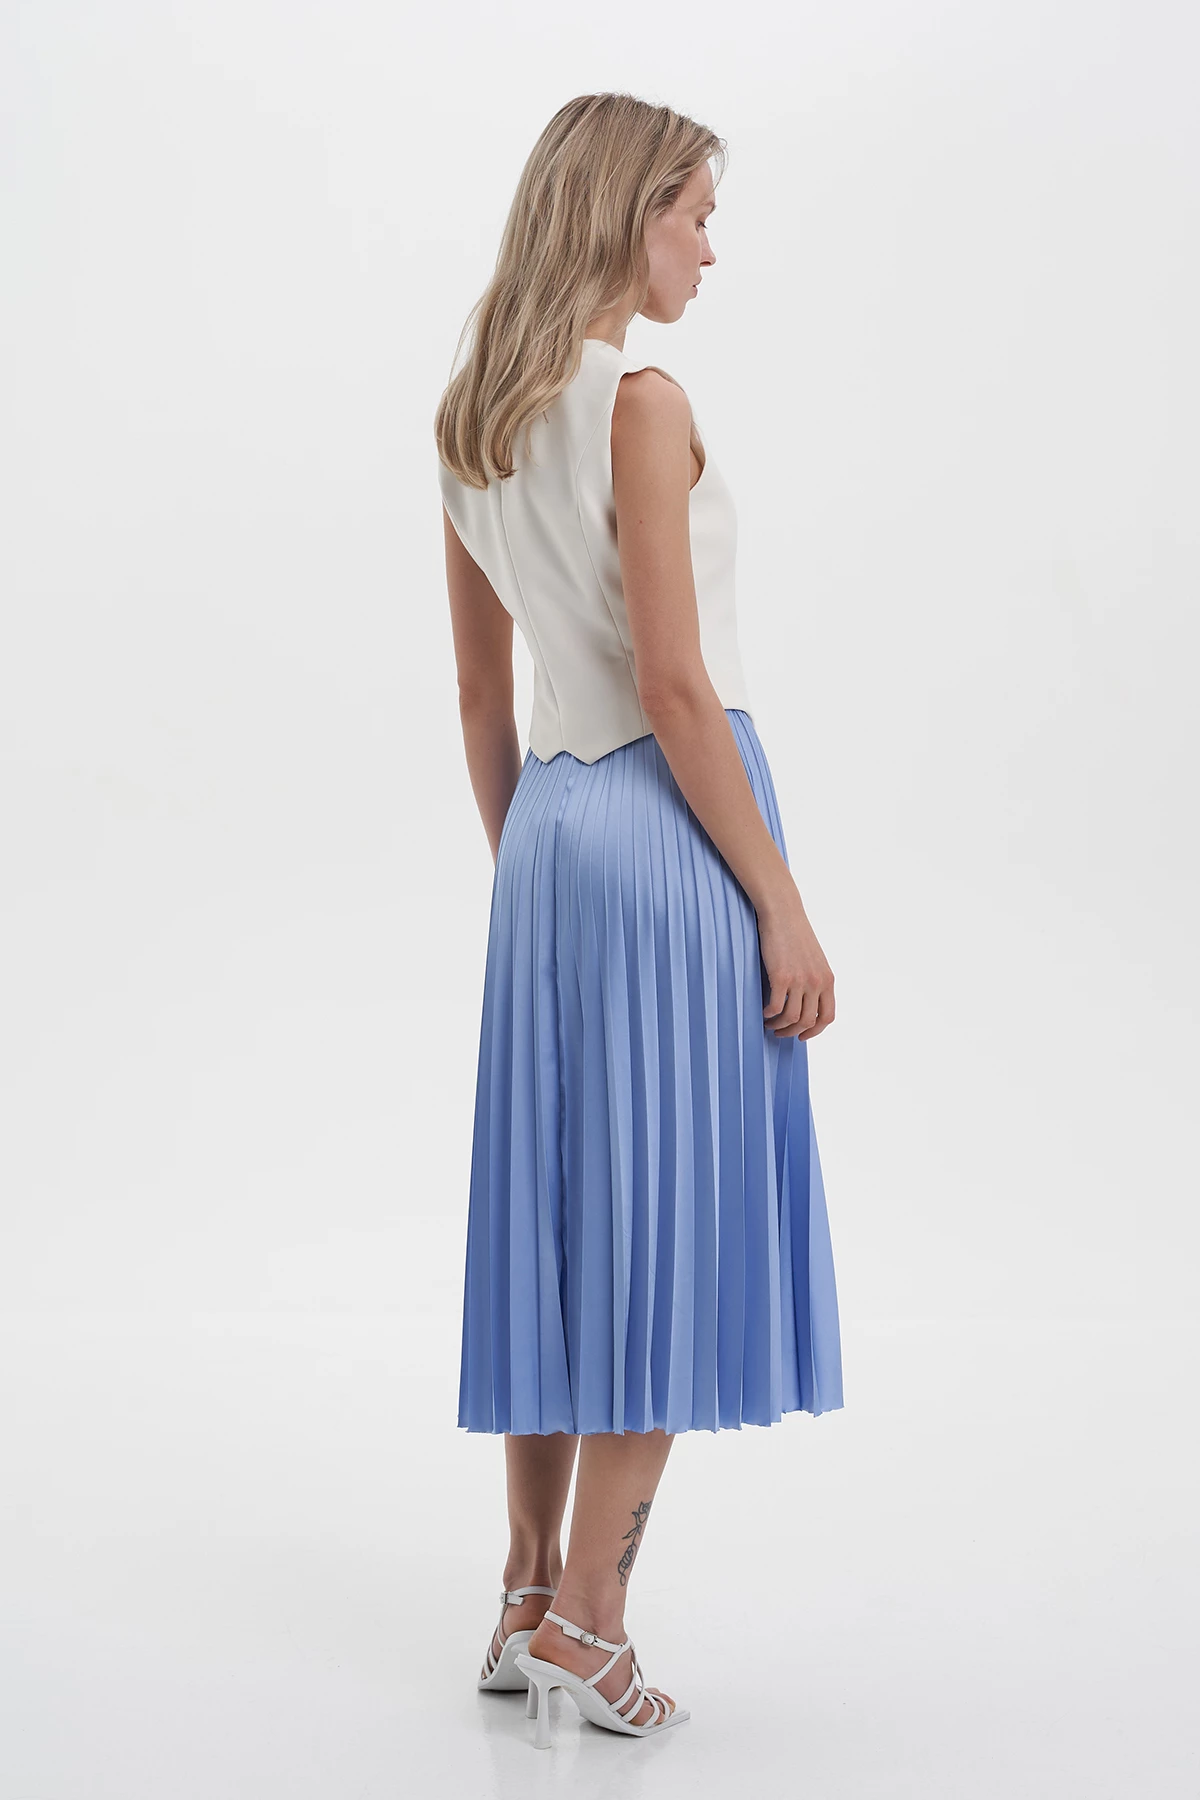 Blue satin midi-length pleated skirt, photo 2